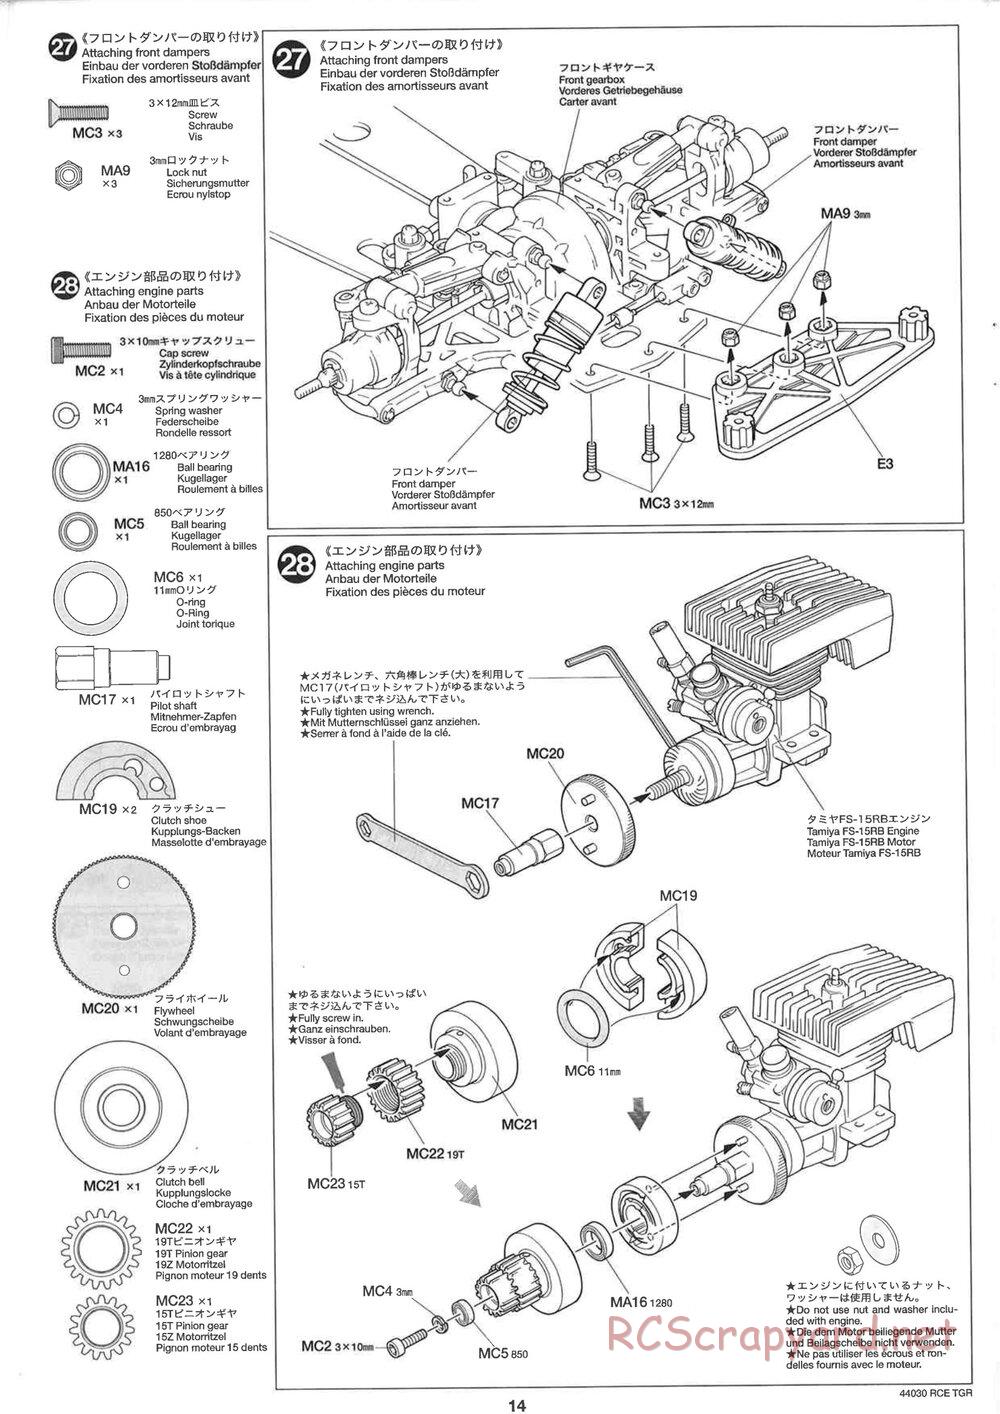 Tamiya - TGR Chassis - Manual - Page 14